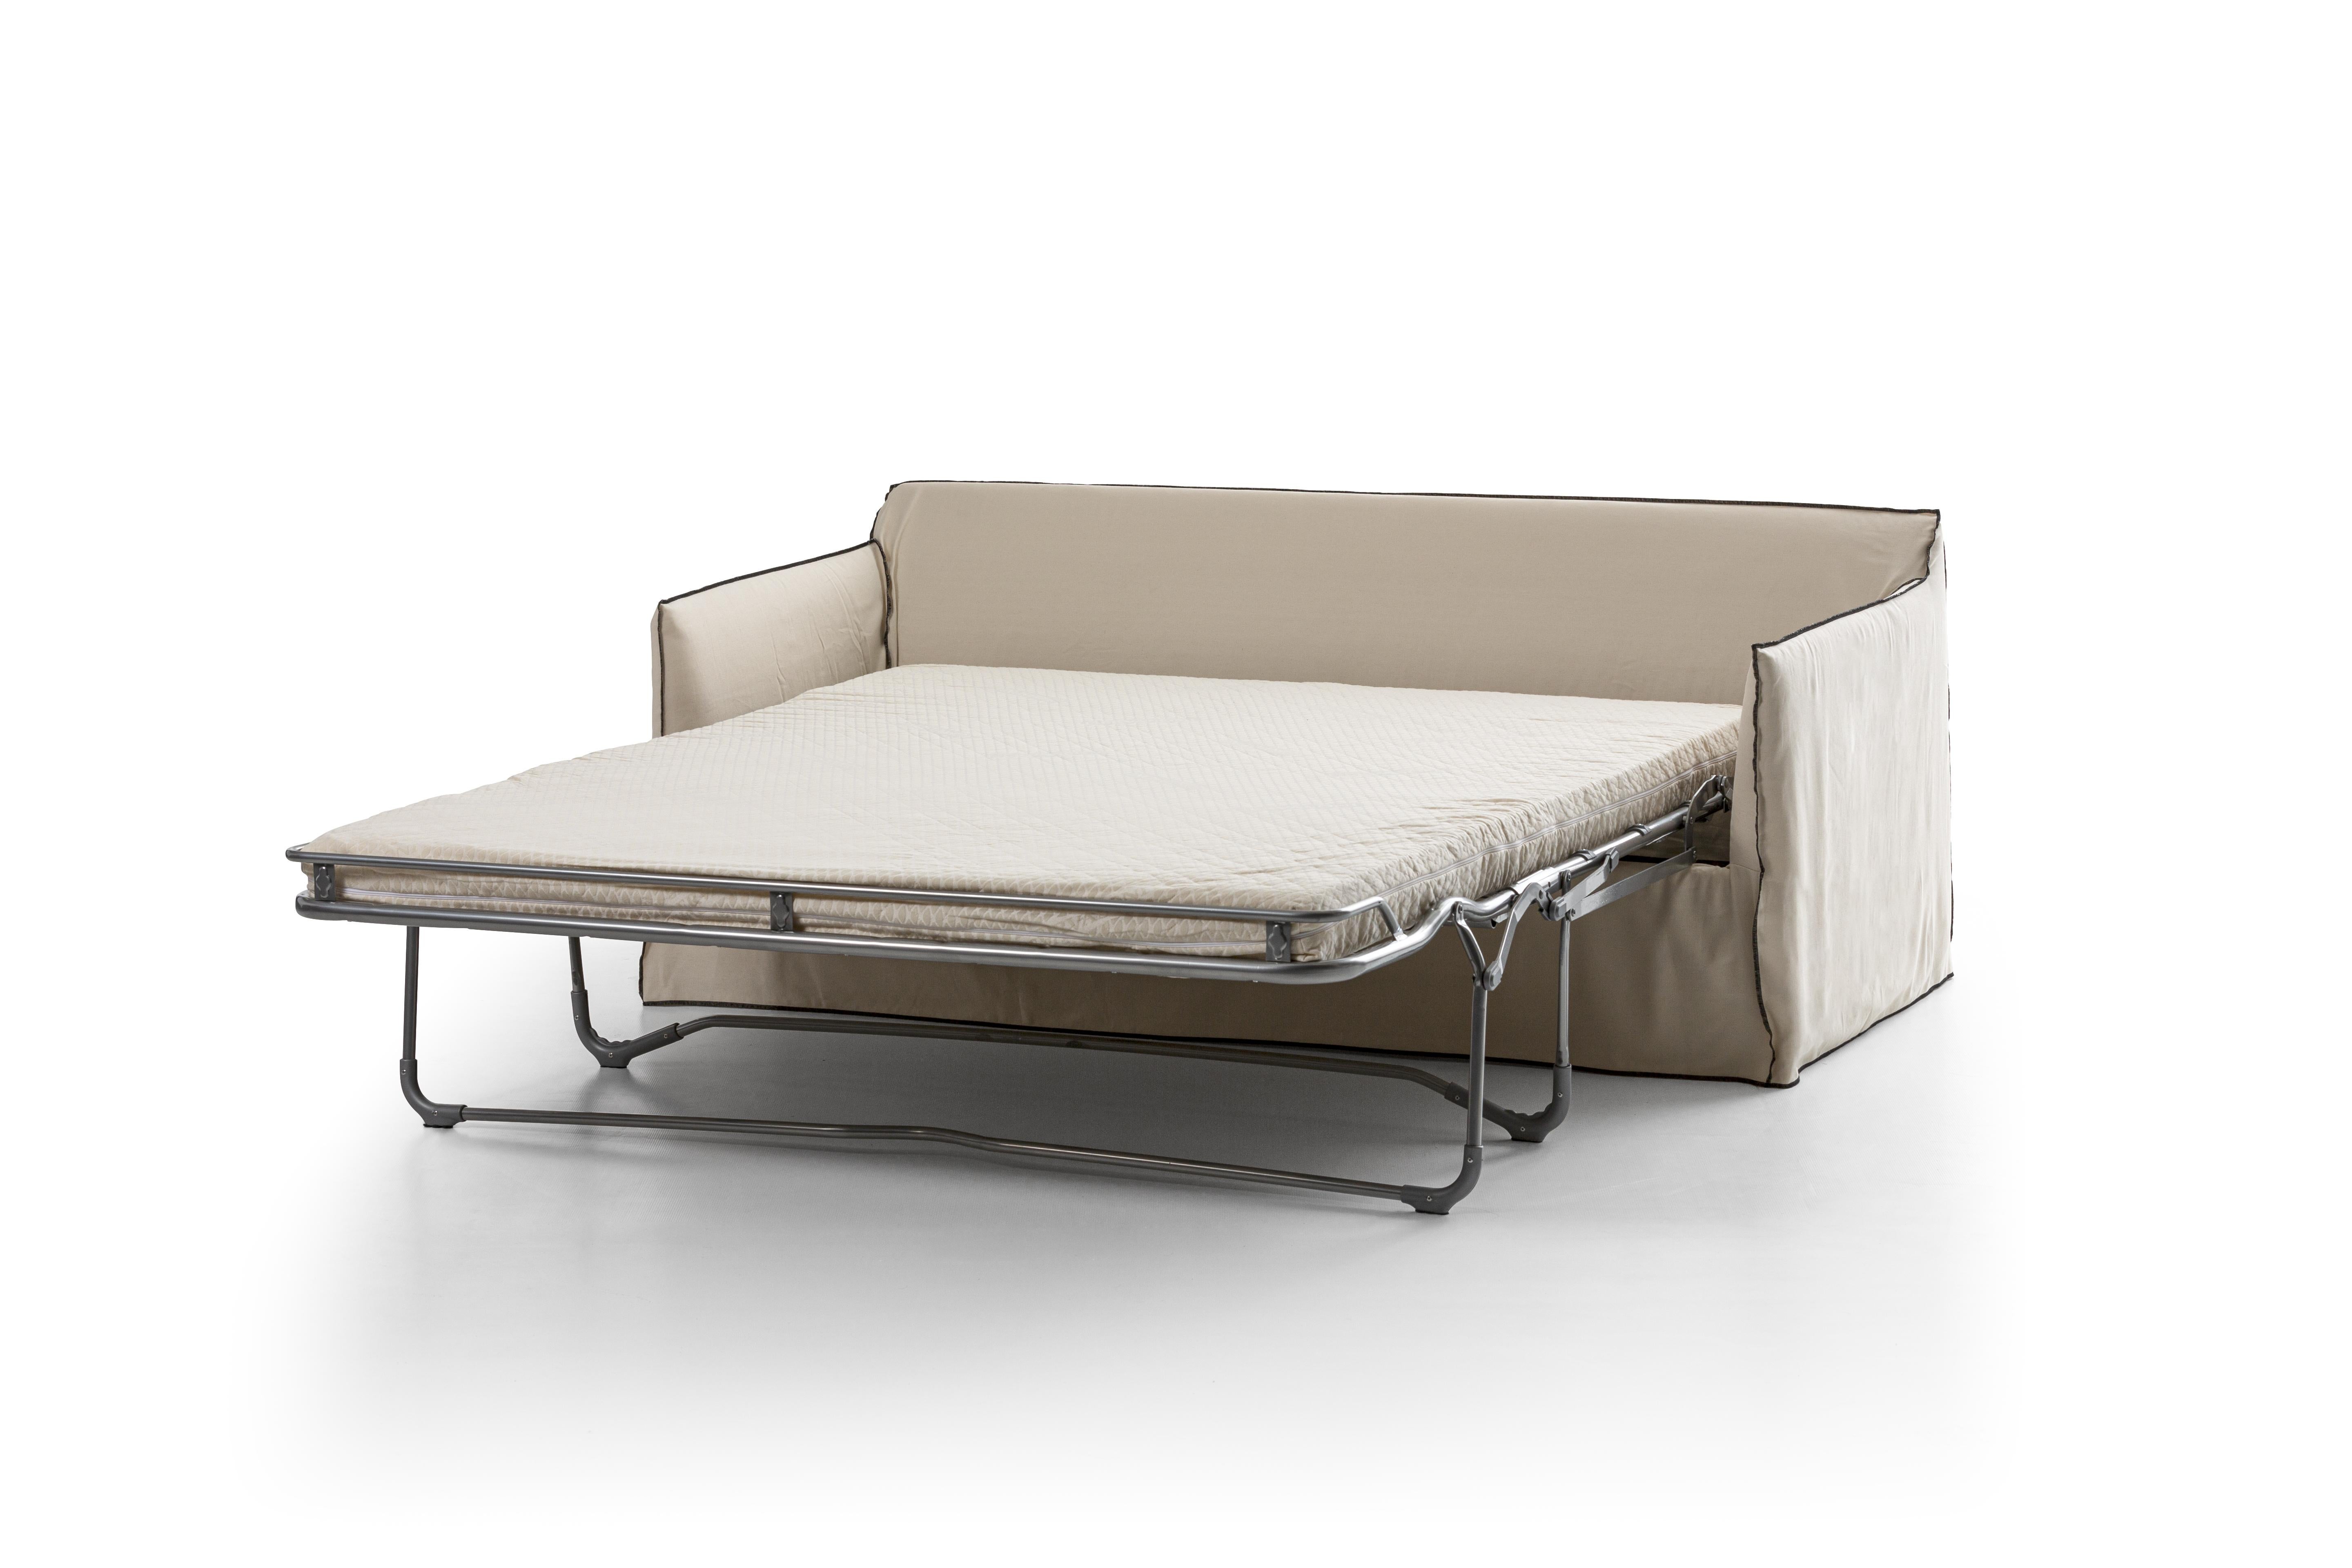 Canapé-lit Gervasoni Ghost 15 avec revêtement en lin blanc par Paola Navone

Canapé-lit rembourré avec des mousses de polyuréthane, déhoussable. Trois coussins de dossier 60 x 60 cm, deux 50 x 50 cm. Cadre métallique pliant. Matelas en mousse de